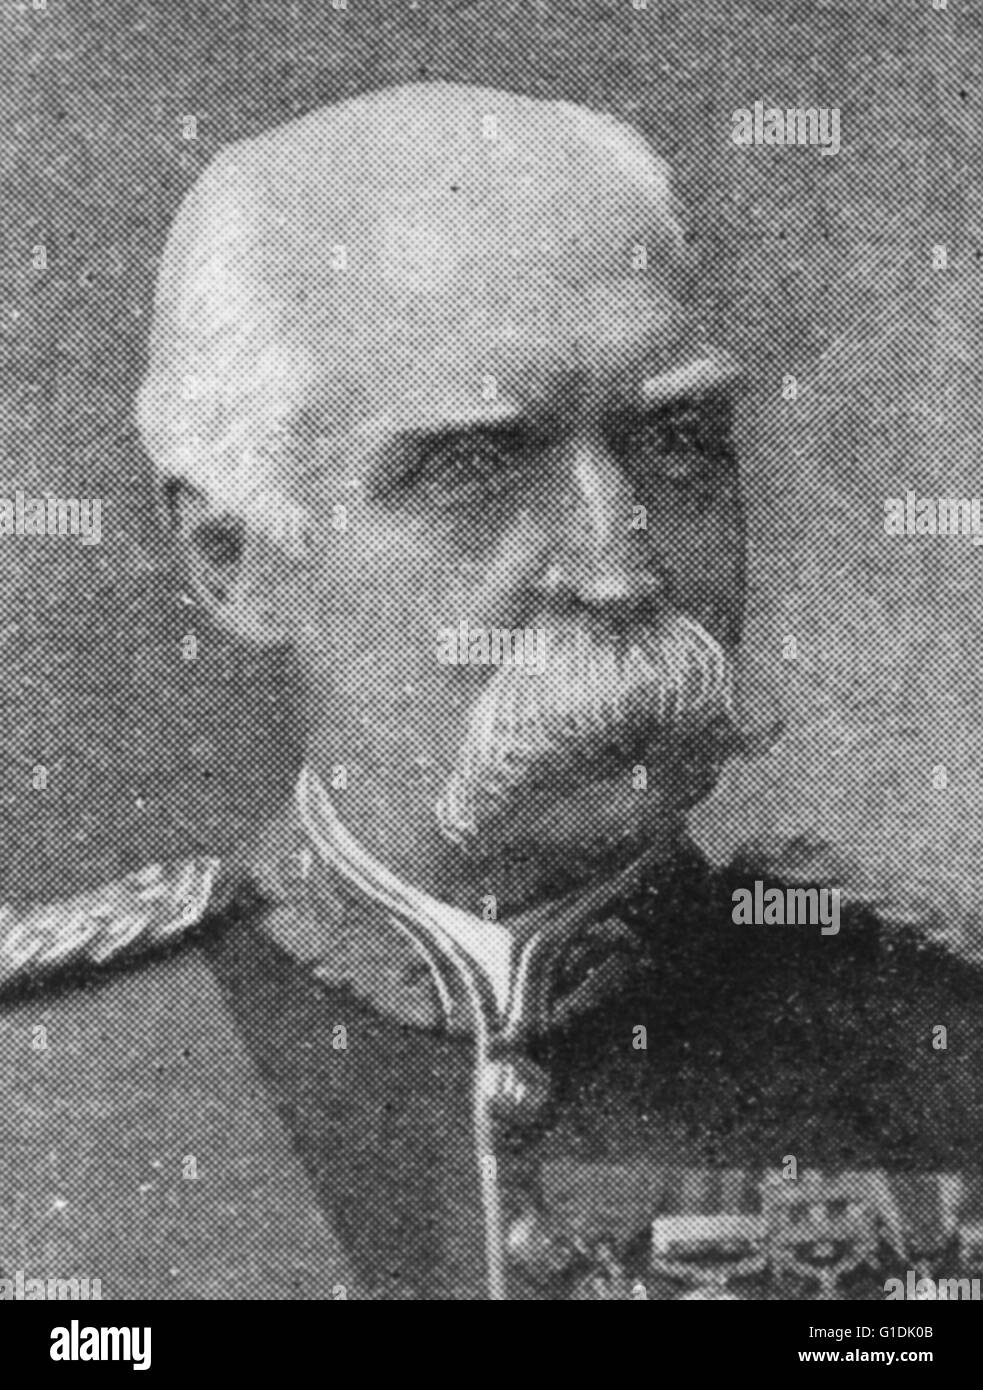 Sir Donald Stewart (1824-1900) ufficiale dell'Esercito britannico coinvolti nel mettere giù la Indian mutiny 1857. Ha giocato un ruolo chiave nella seconda anglo-afgan guerra e fu successivamente nominato segretario di Stato per l'India. 1893. Foto Stock